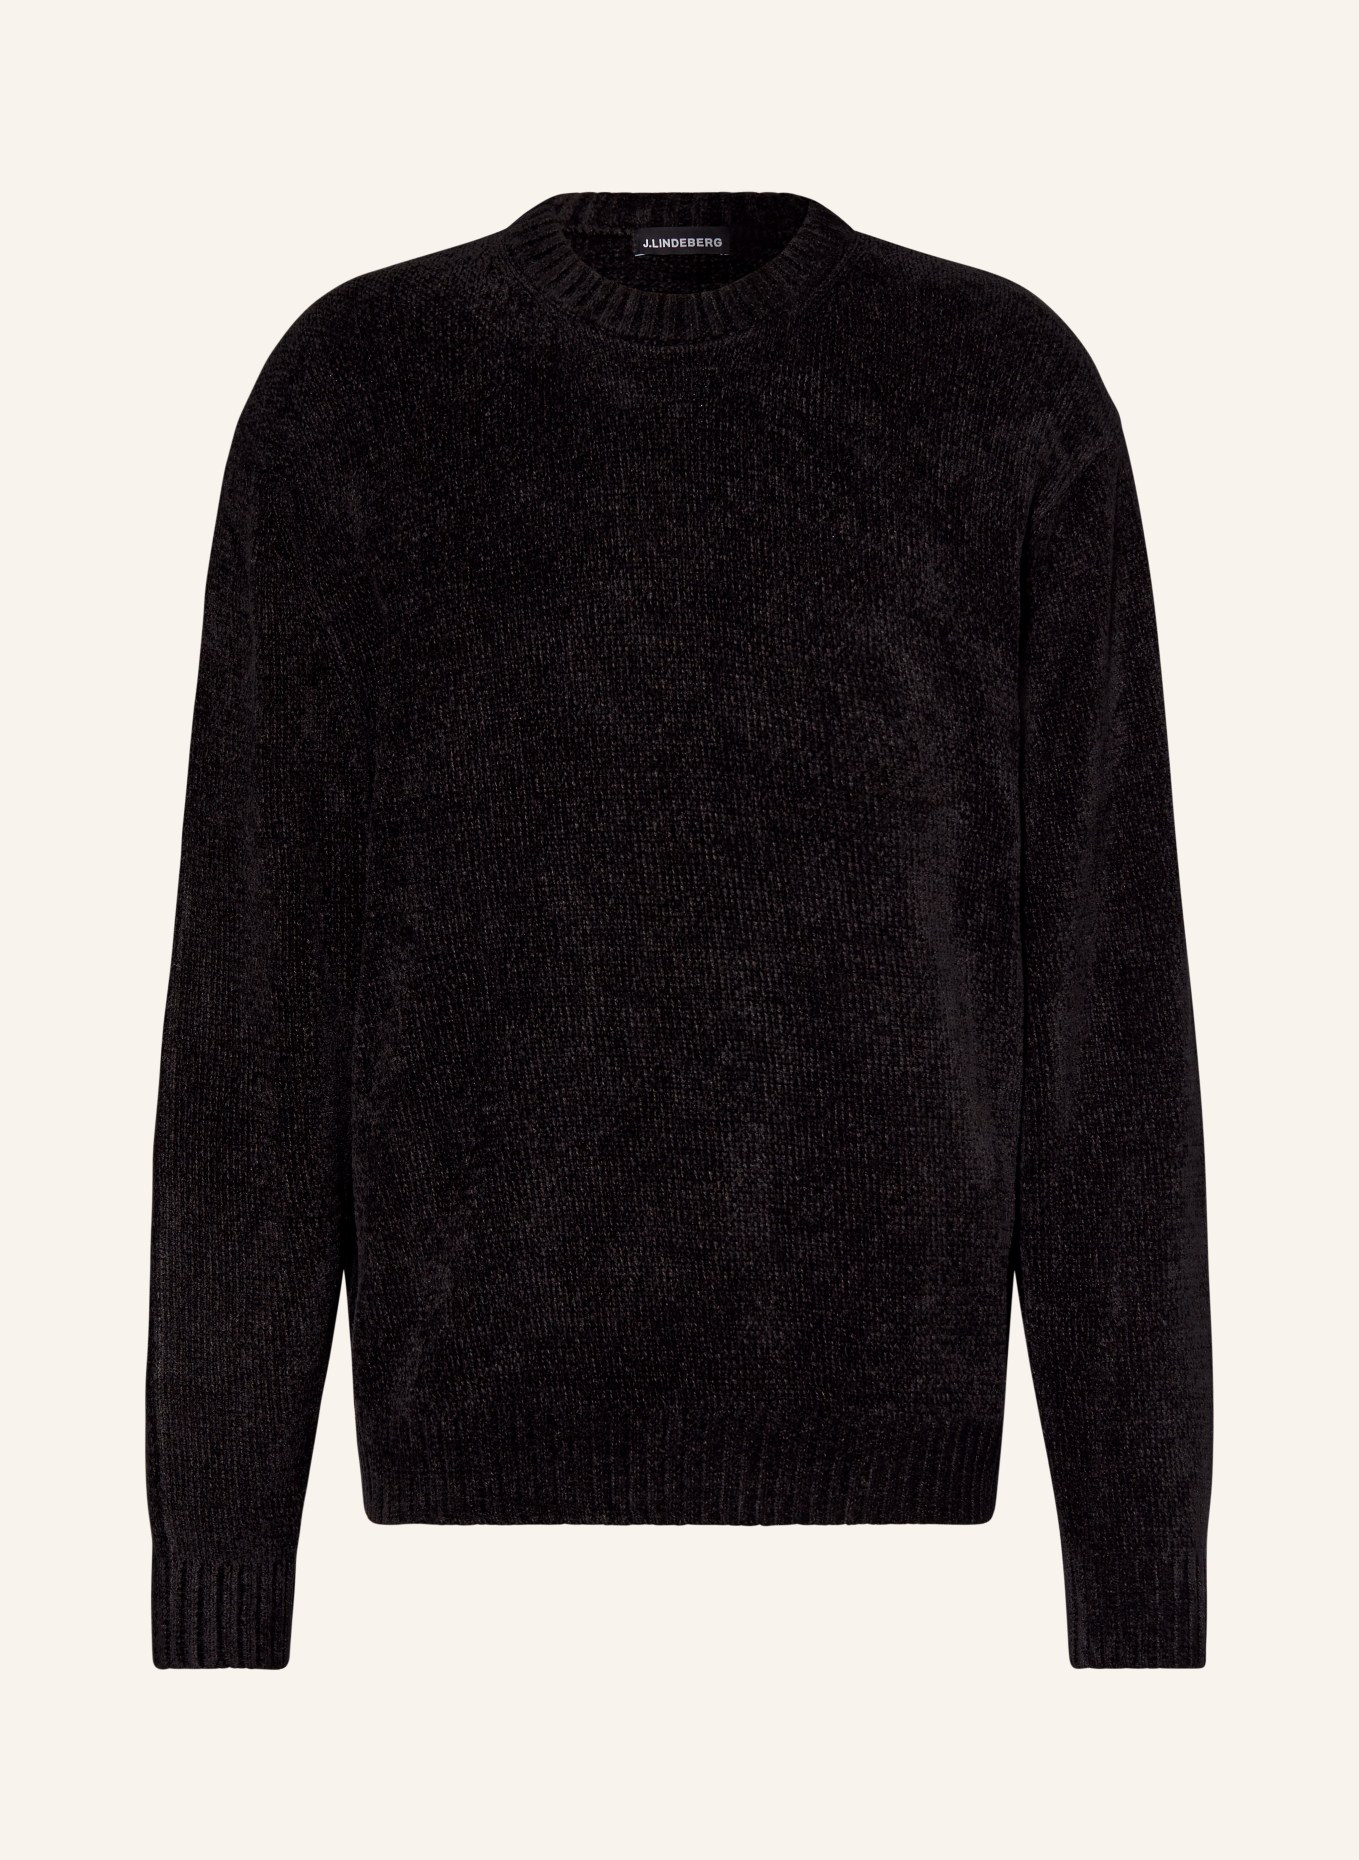 J.LINDEBERG Sweater, Color: BLACK (Image 1)